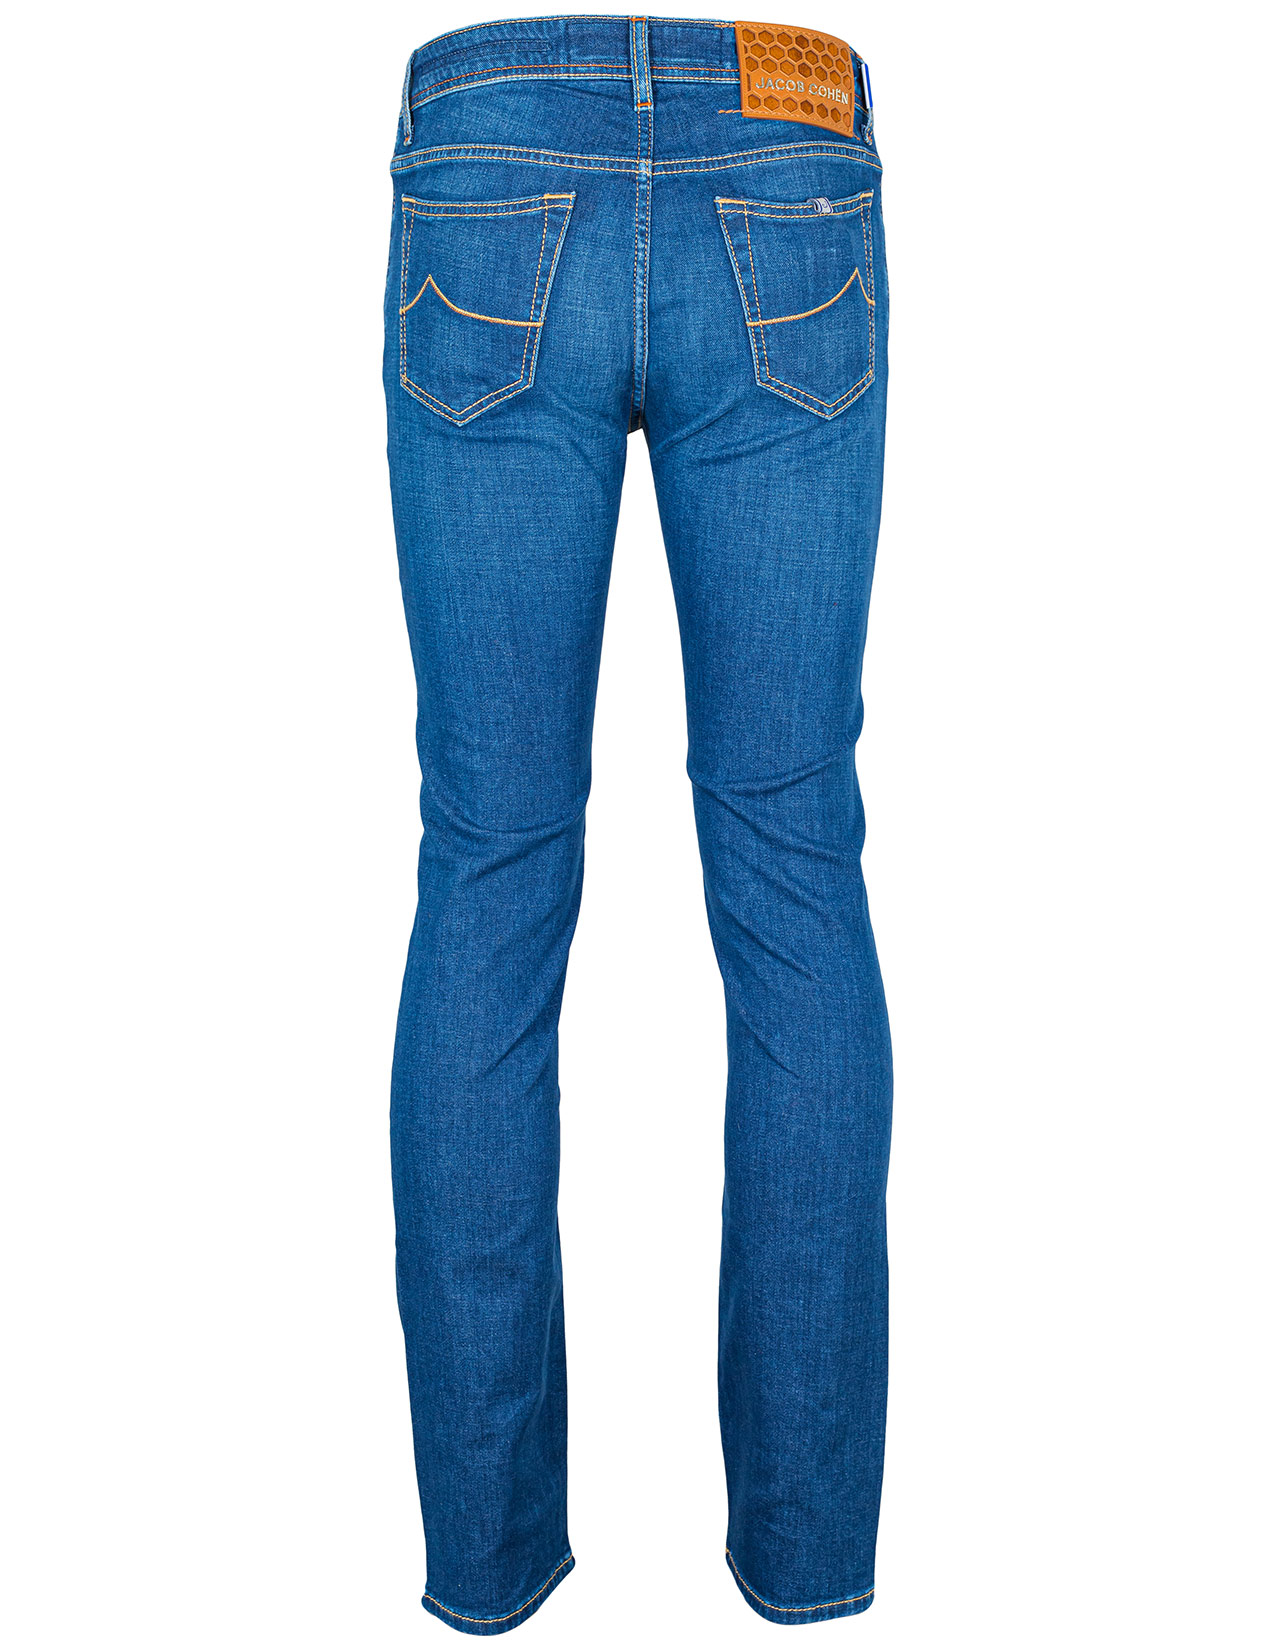 Jacob Cohen Jeans BARD "Premium Edition Denim" in blau leicht verwaschen